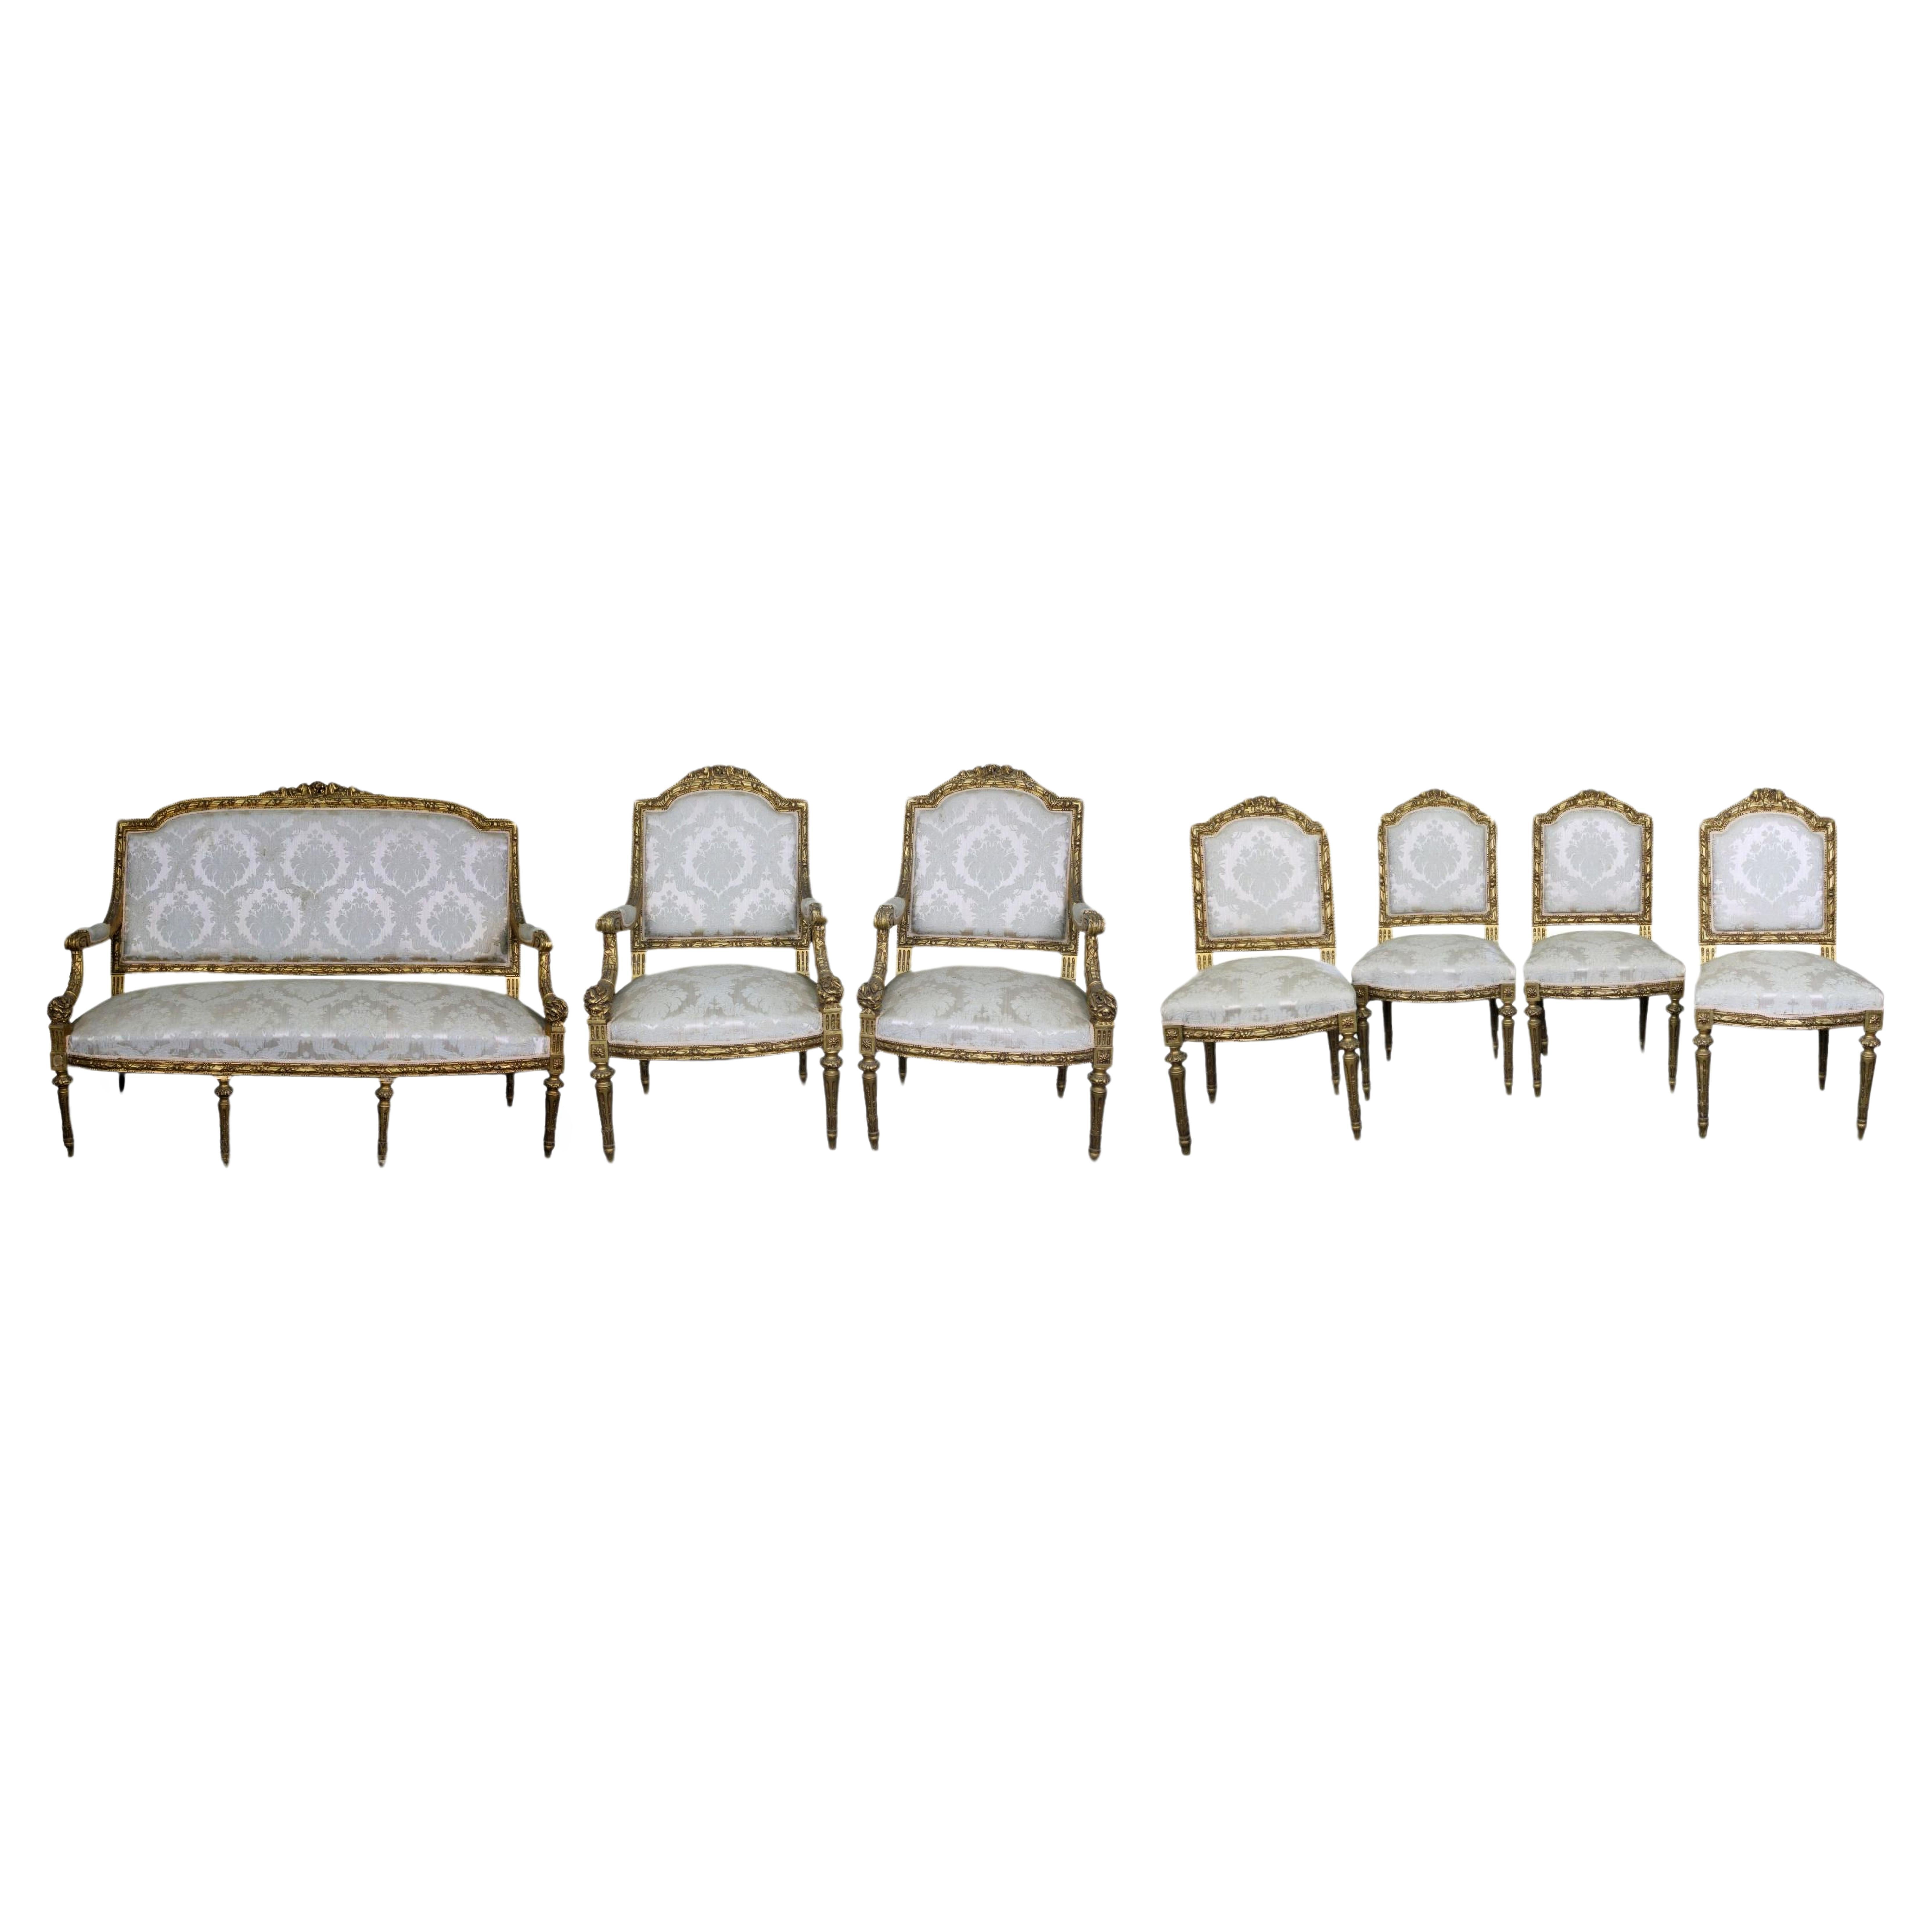 Important ensemble de canapés, paire de fauteuils et lot de 4 chaises de style Louis XVI du 19e siècle

SOFA
en bois richement sculpté et doré de style Louis XVI, France, fin du 19e siècle, h 125 x 160 x 75 cm

PAIRE DE FAUTEUILS
en bois richement